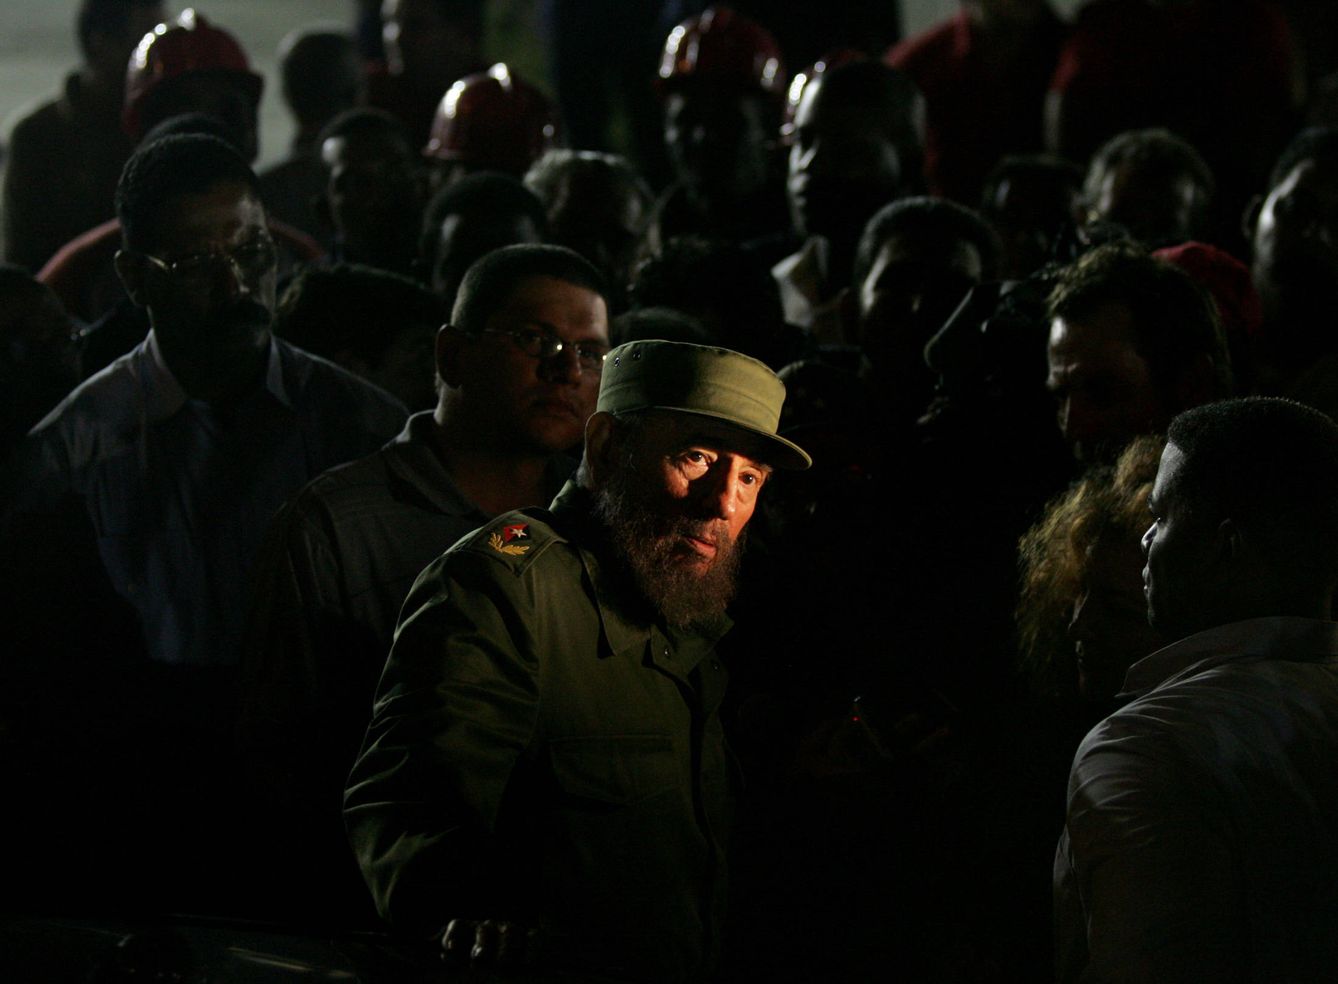 Las luces de neón iluminan el rostro de Fidel Castro durante una visita nocturna a una obra, en enero de 2006. (Reuters)